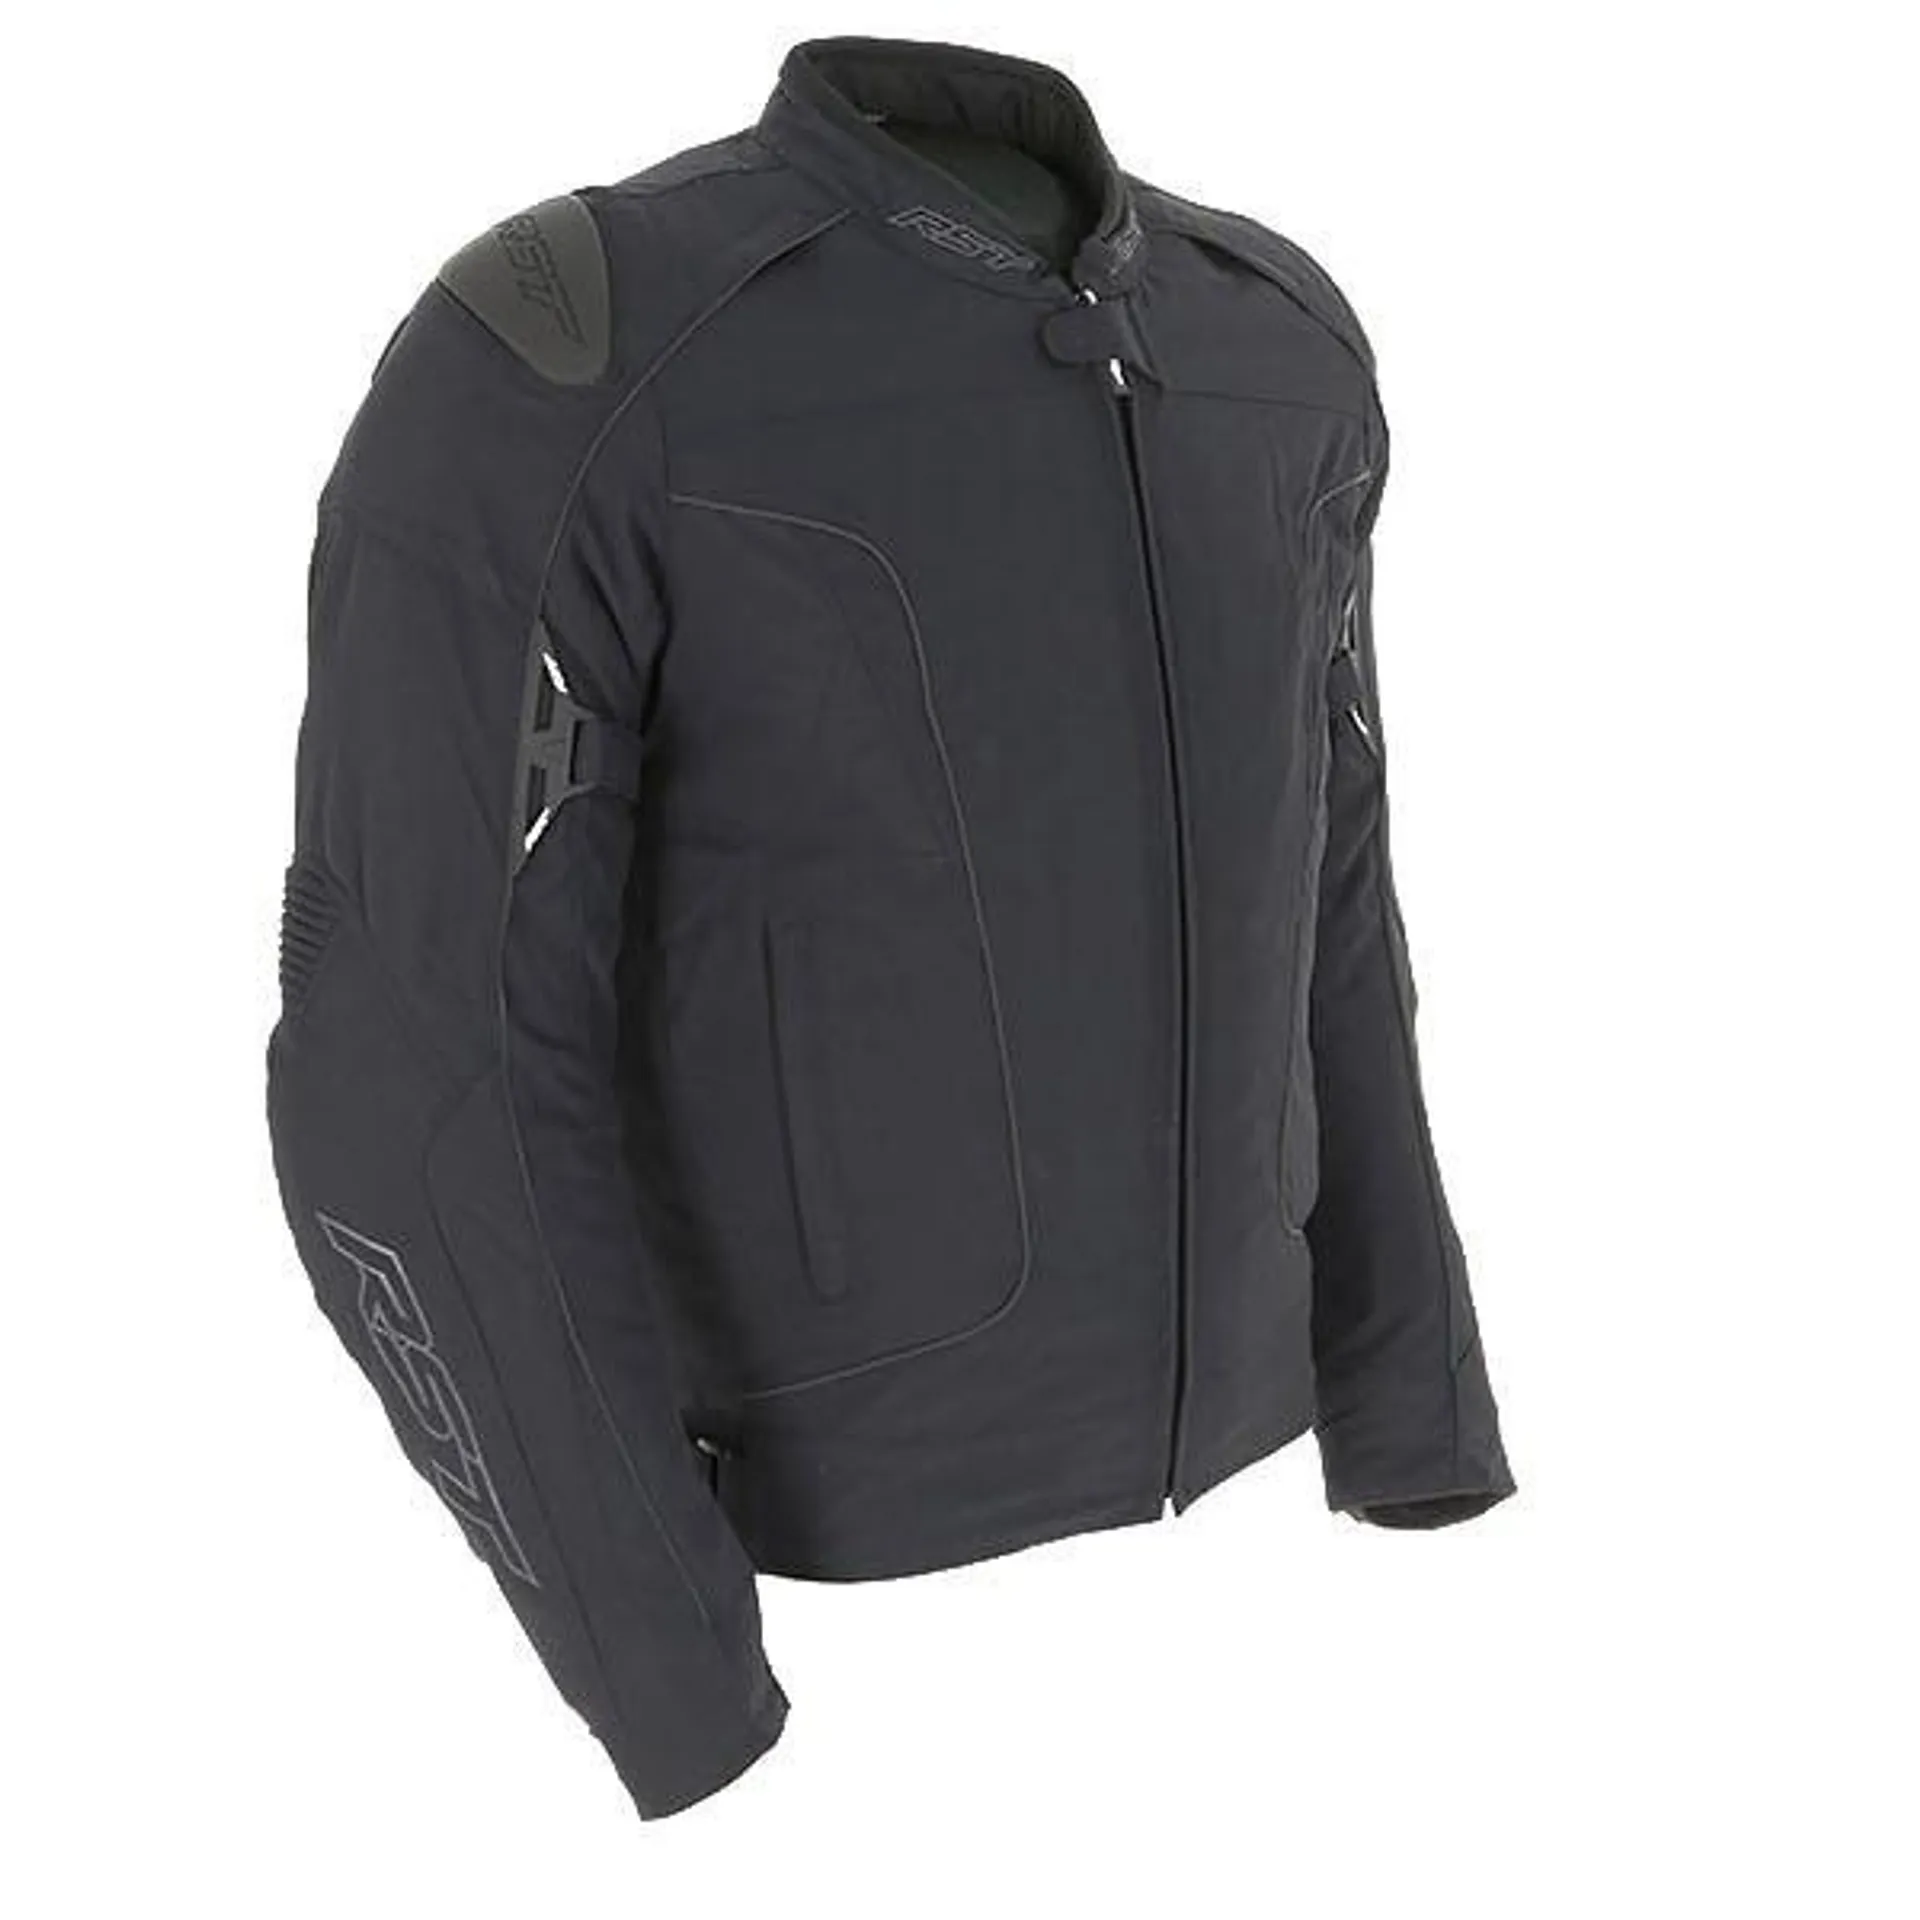 RST GT CE Textile Jacket - Black / Black